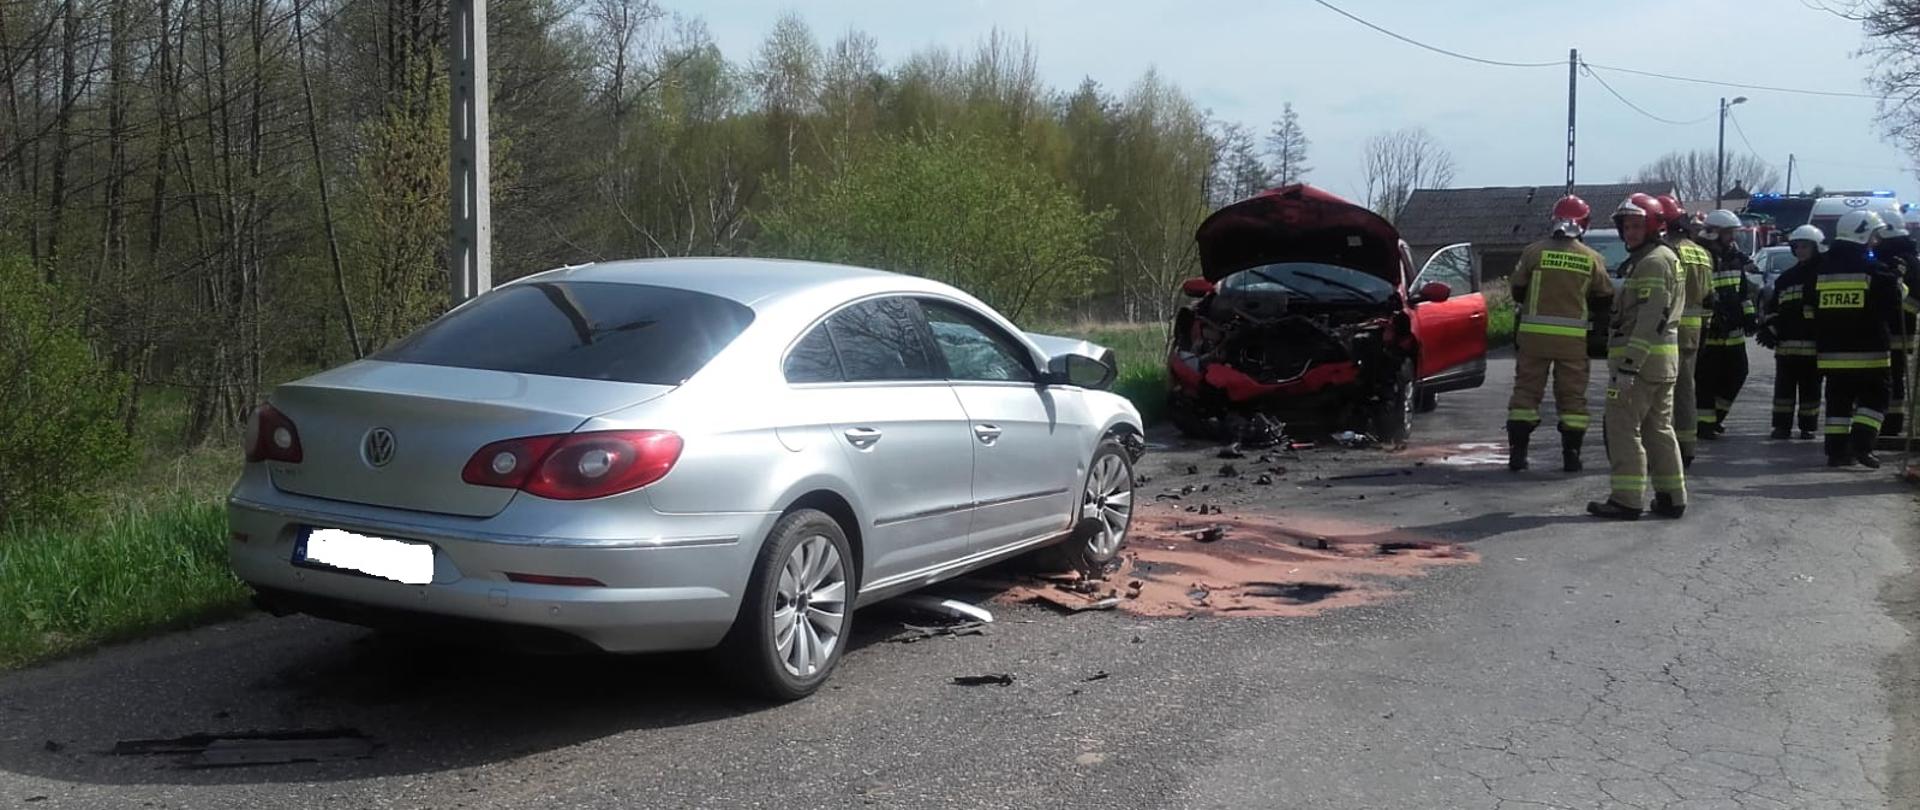 Wypadek drogowy w miejscowości Bejsce